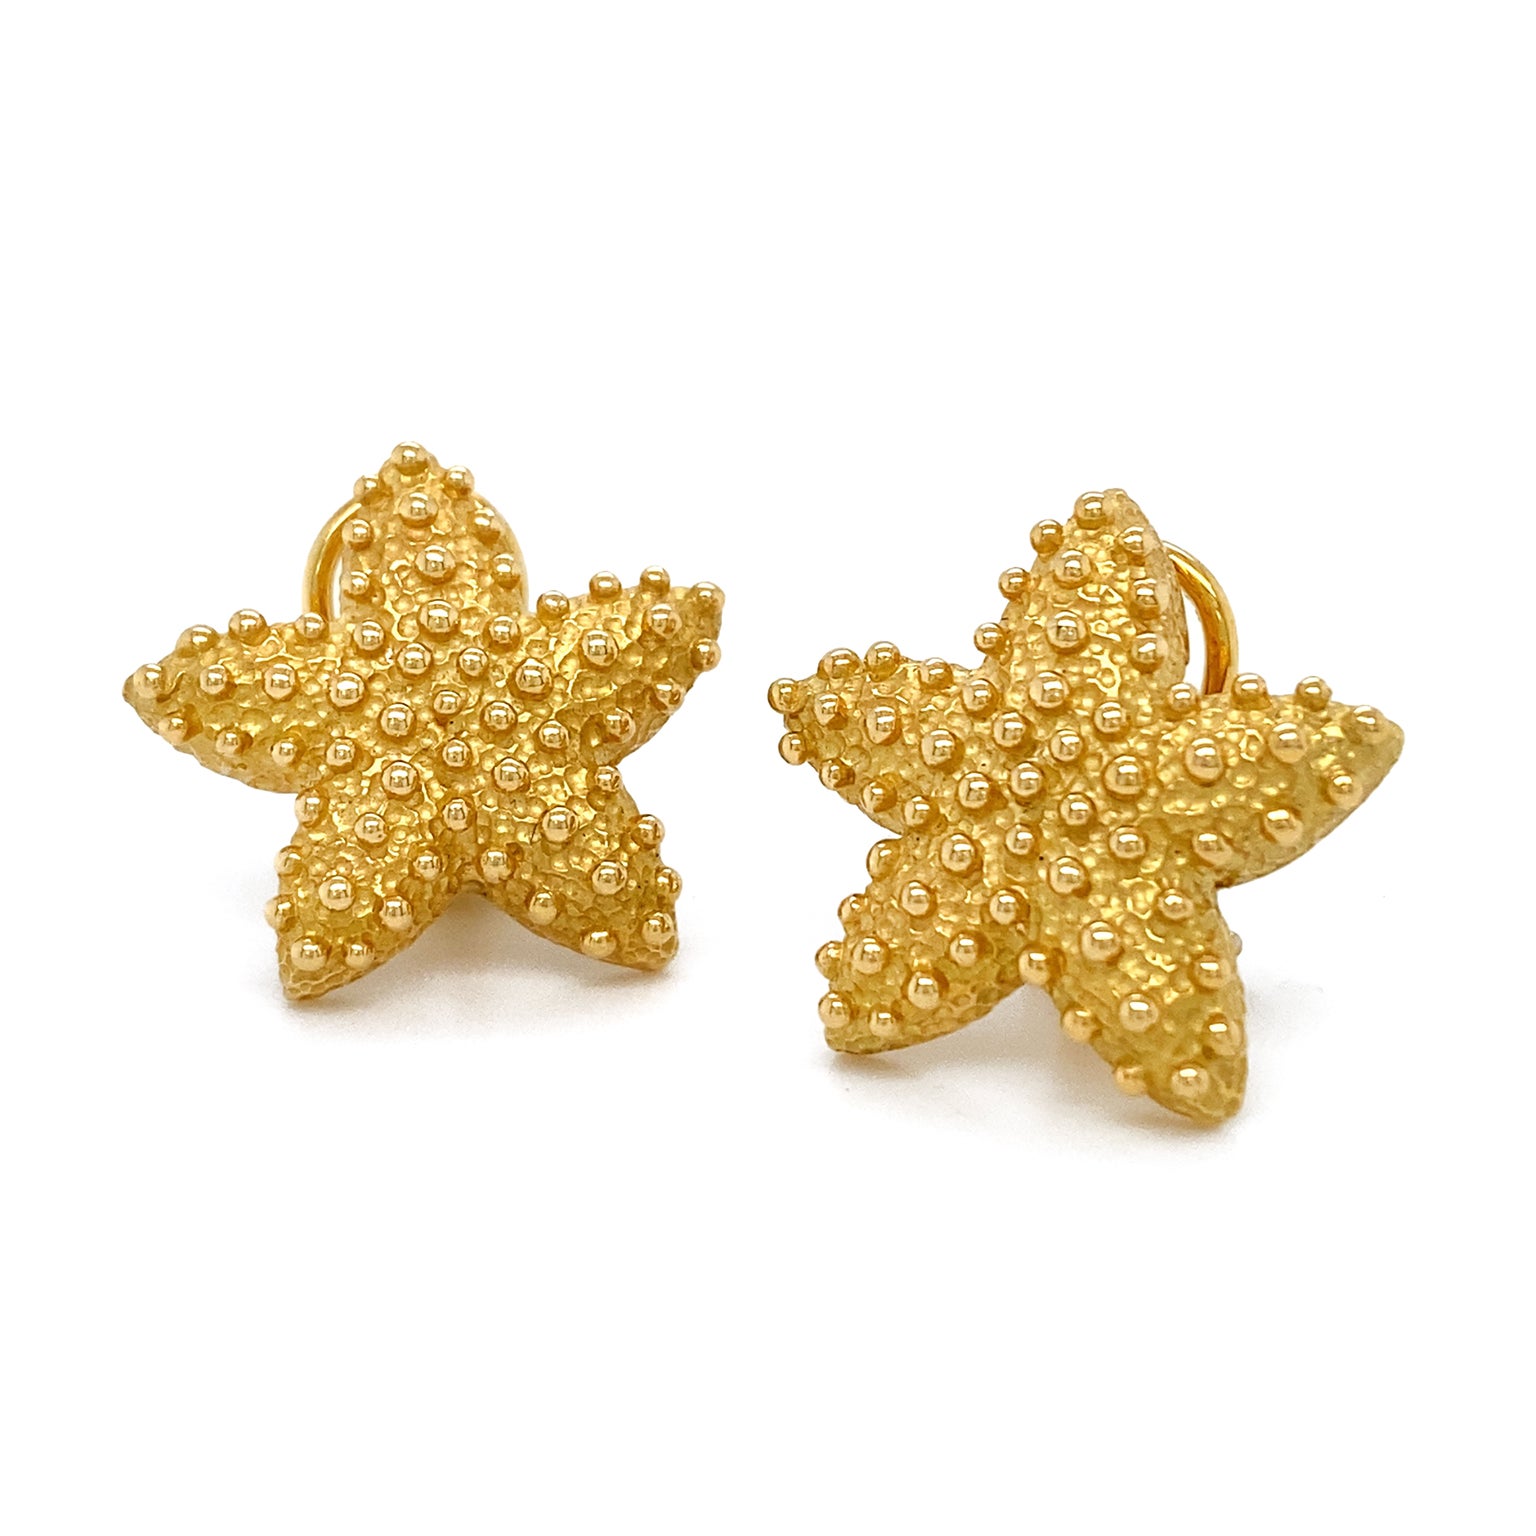 L'or anime ces boucles d'oreilles en forme d'étoile de mer. La base reprend la silhouette de l'animal marin et a été texturée pour plus de réalisme et de précision. Des globes lisses du métal sont dispersés sur ce dernier pour compléter l'esprit